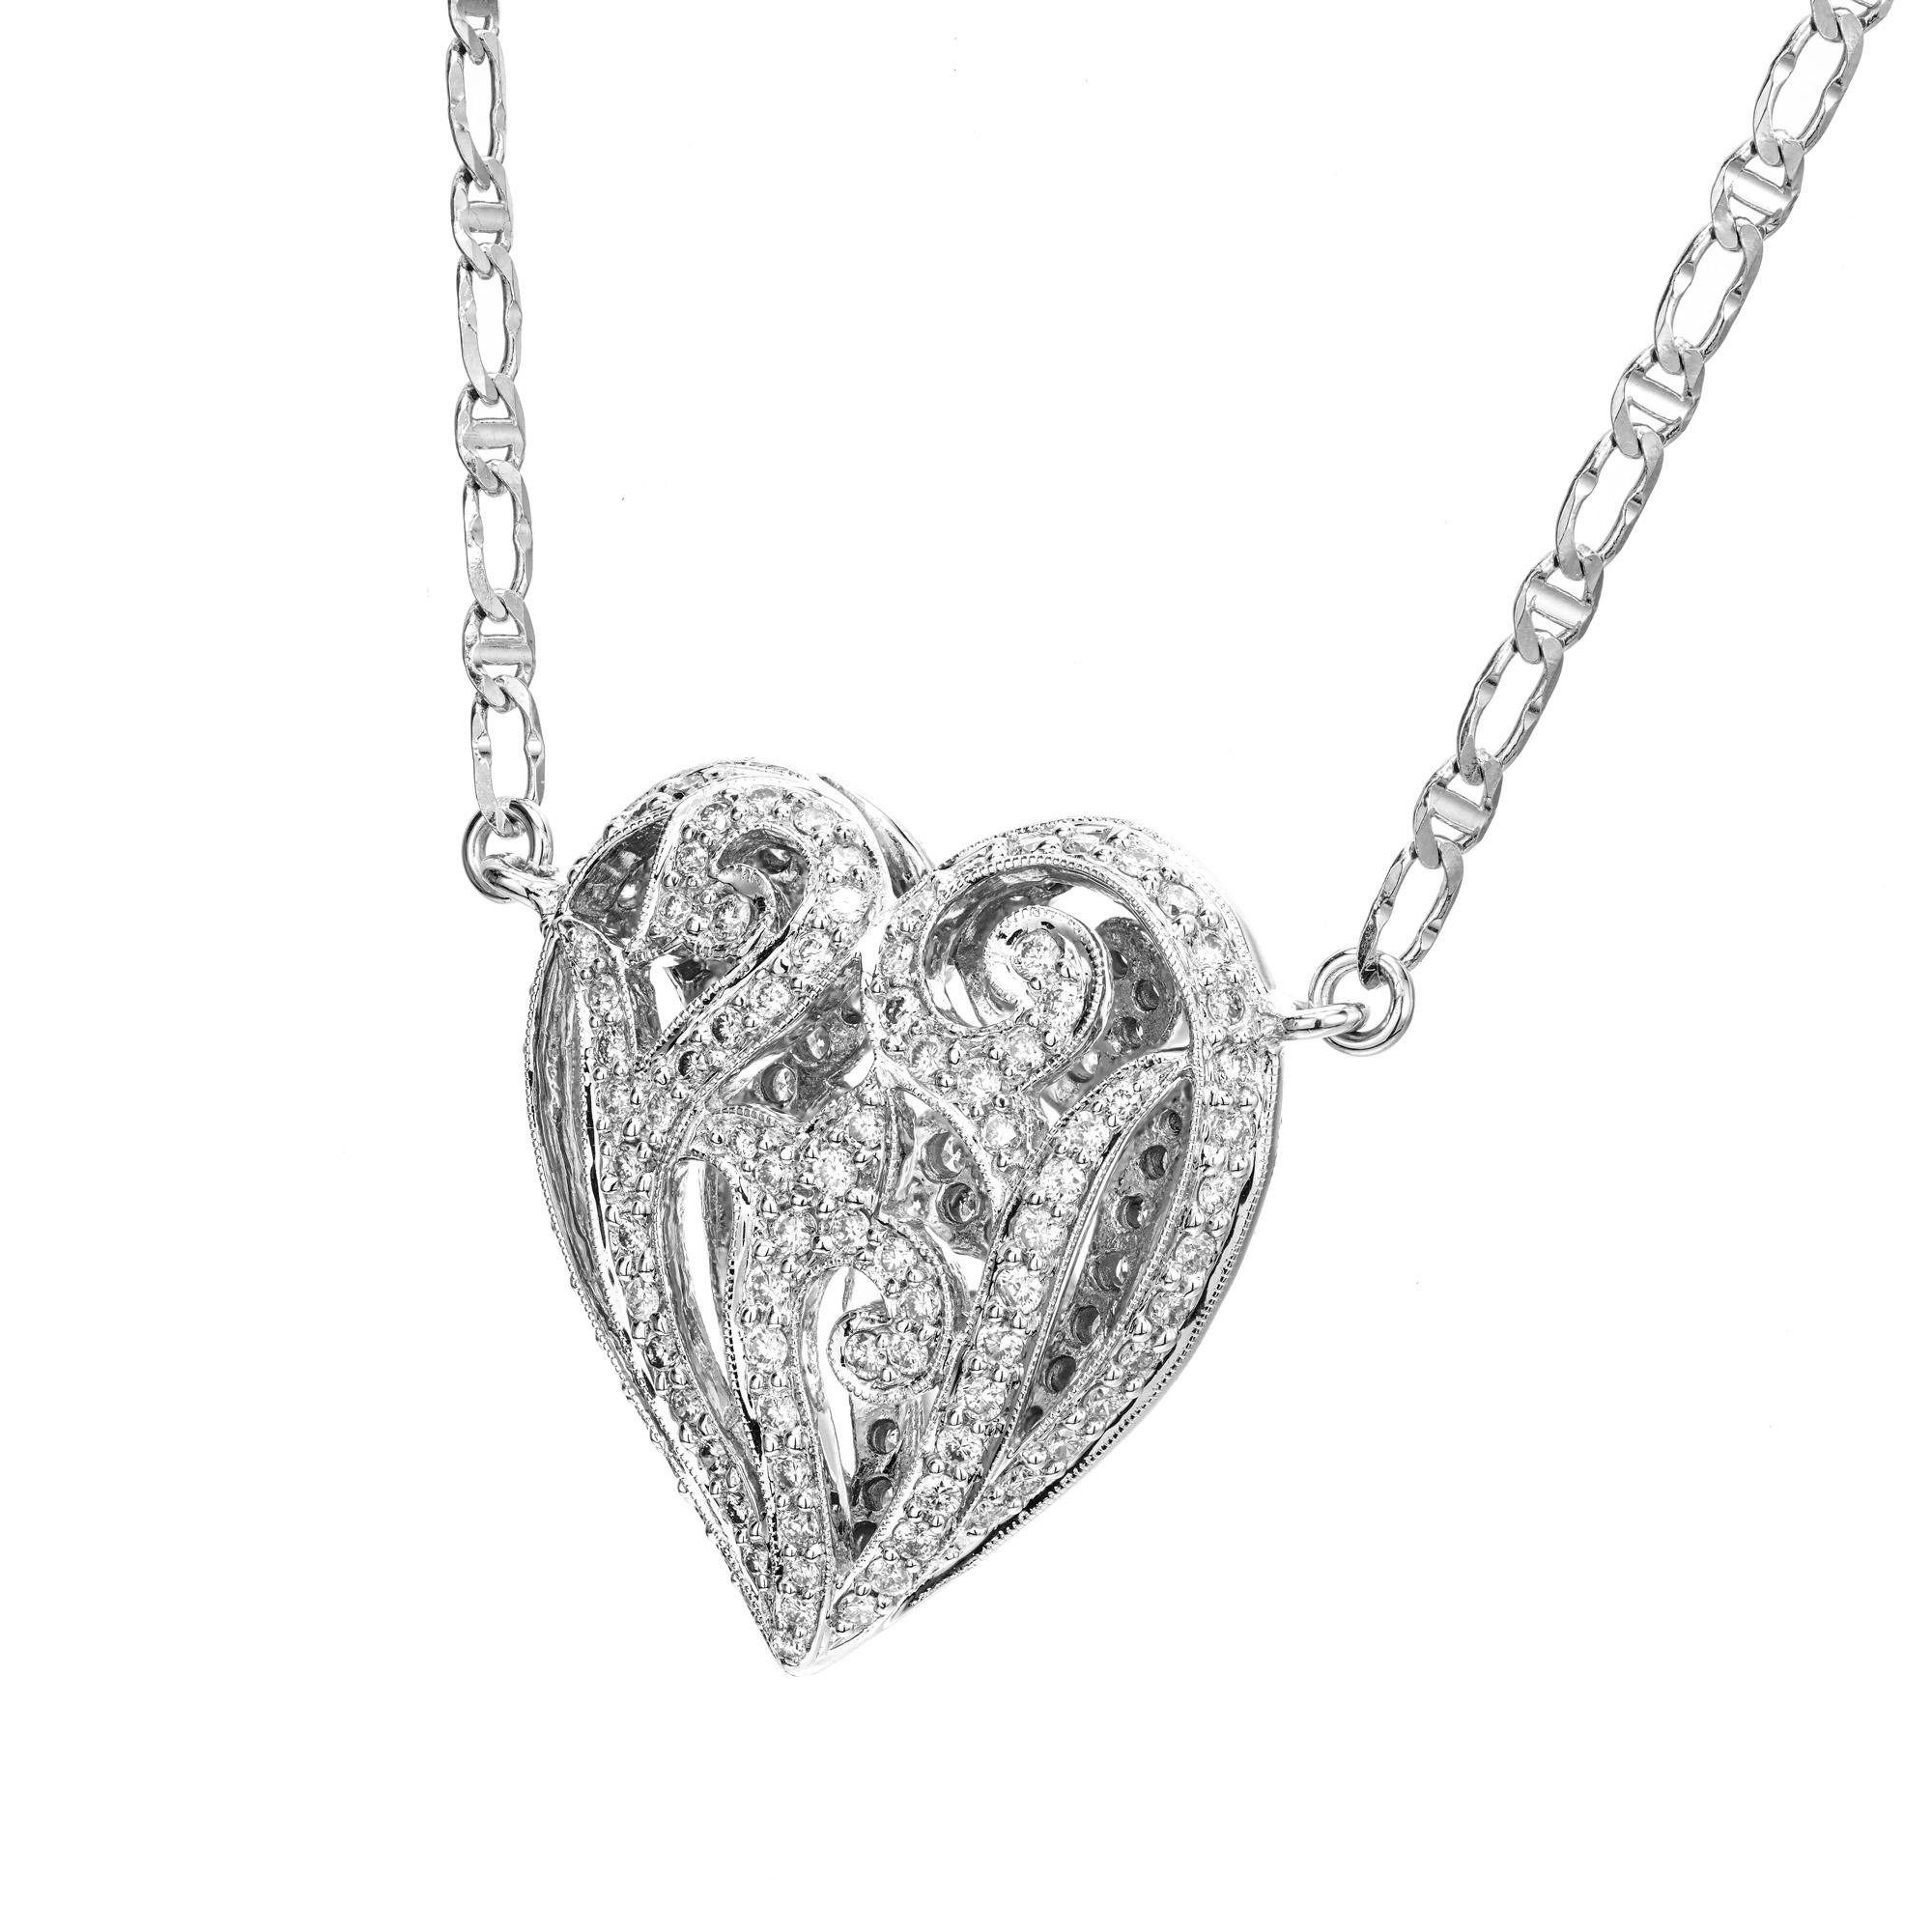 1970 Captivant collier pendentif en diamant en forme de cœur. Ce superbe pendentif en forme de cœur bouffant et dôme est orné de 196 diamants ronds de taille brillant sertis pour un total de 1,75 ct. Le recto et le verso du pendentif sont